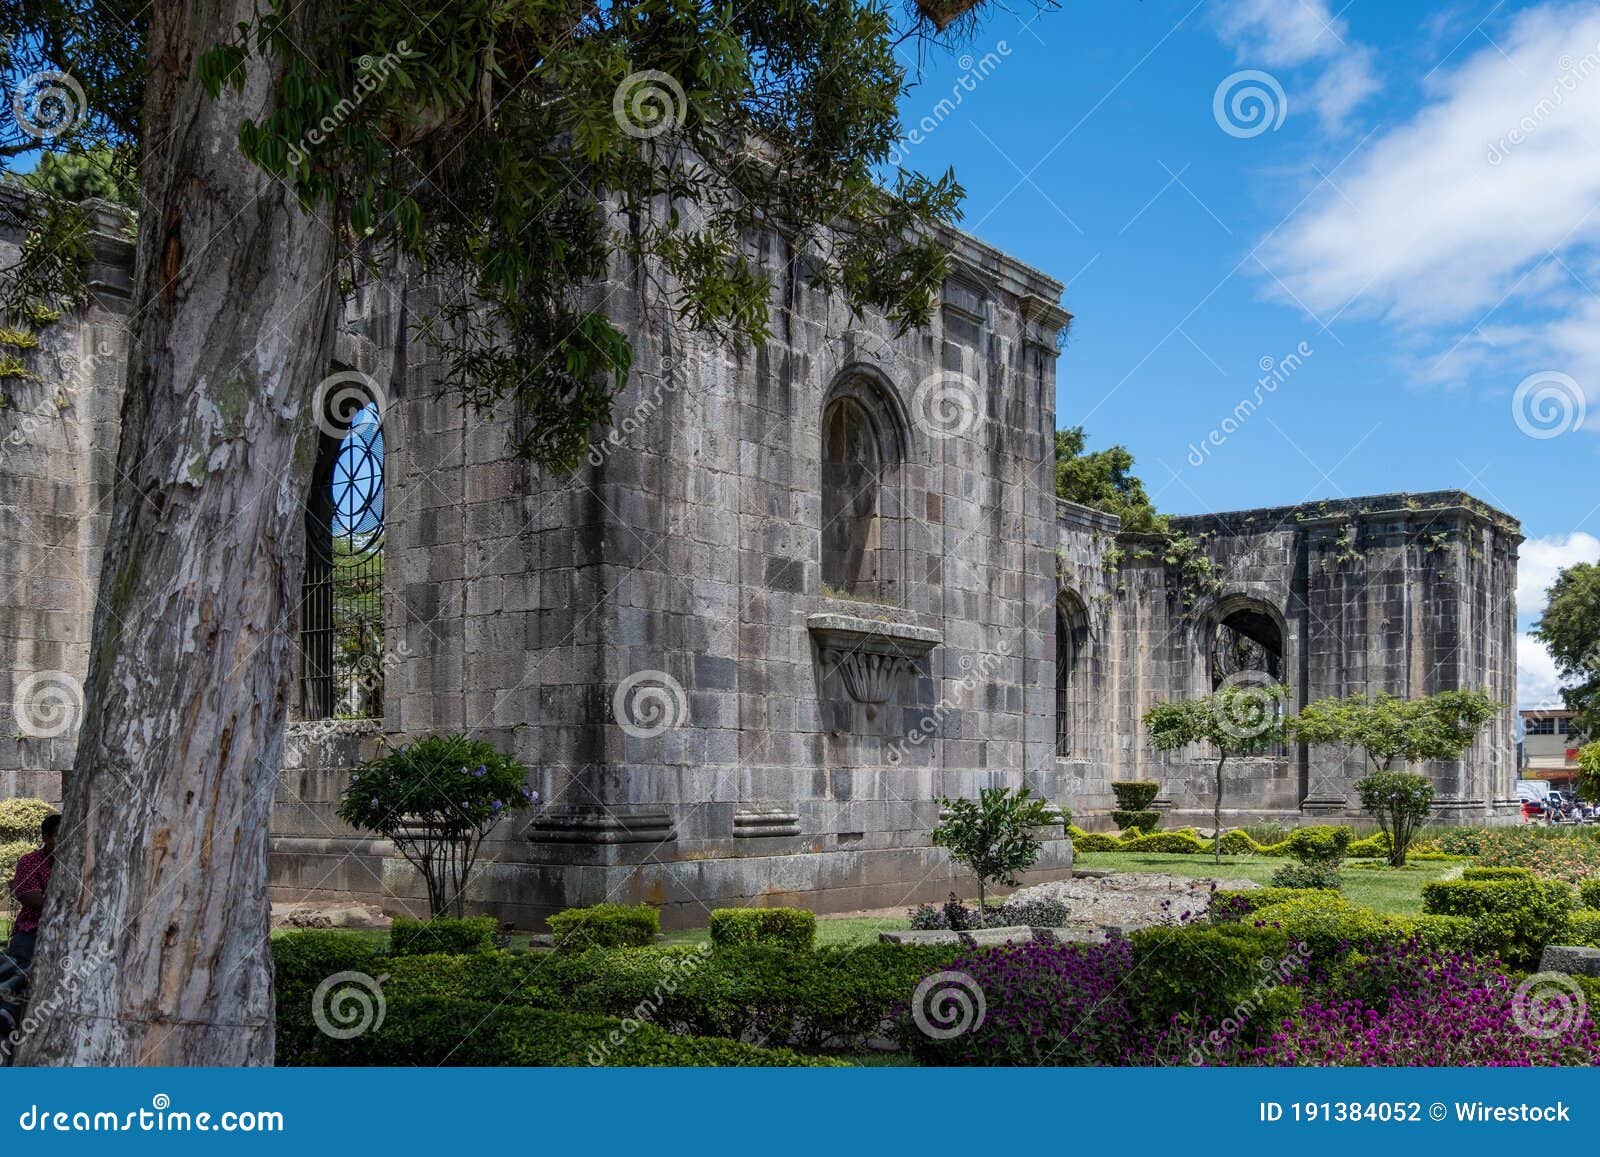 santiago apostol parish ruins in the city of cartago, costa rica